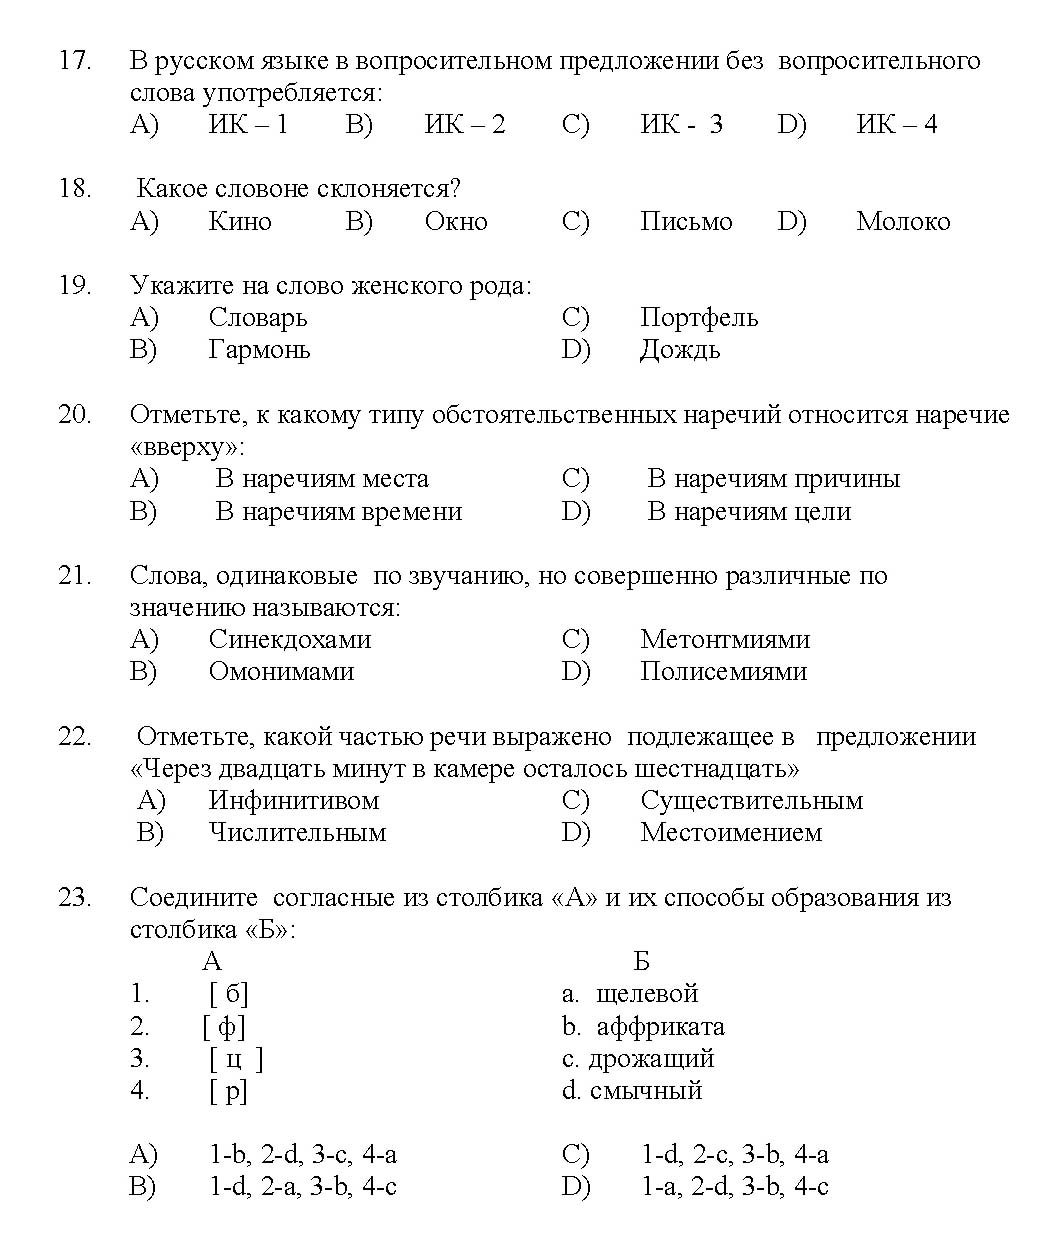 Kerala SET Russian Exam 2017 Question Code 17227 A 3